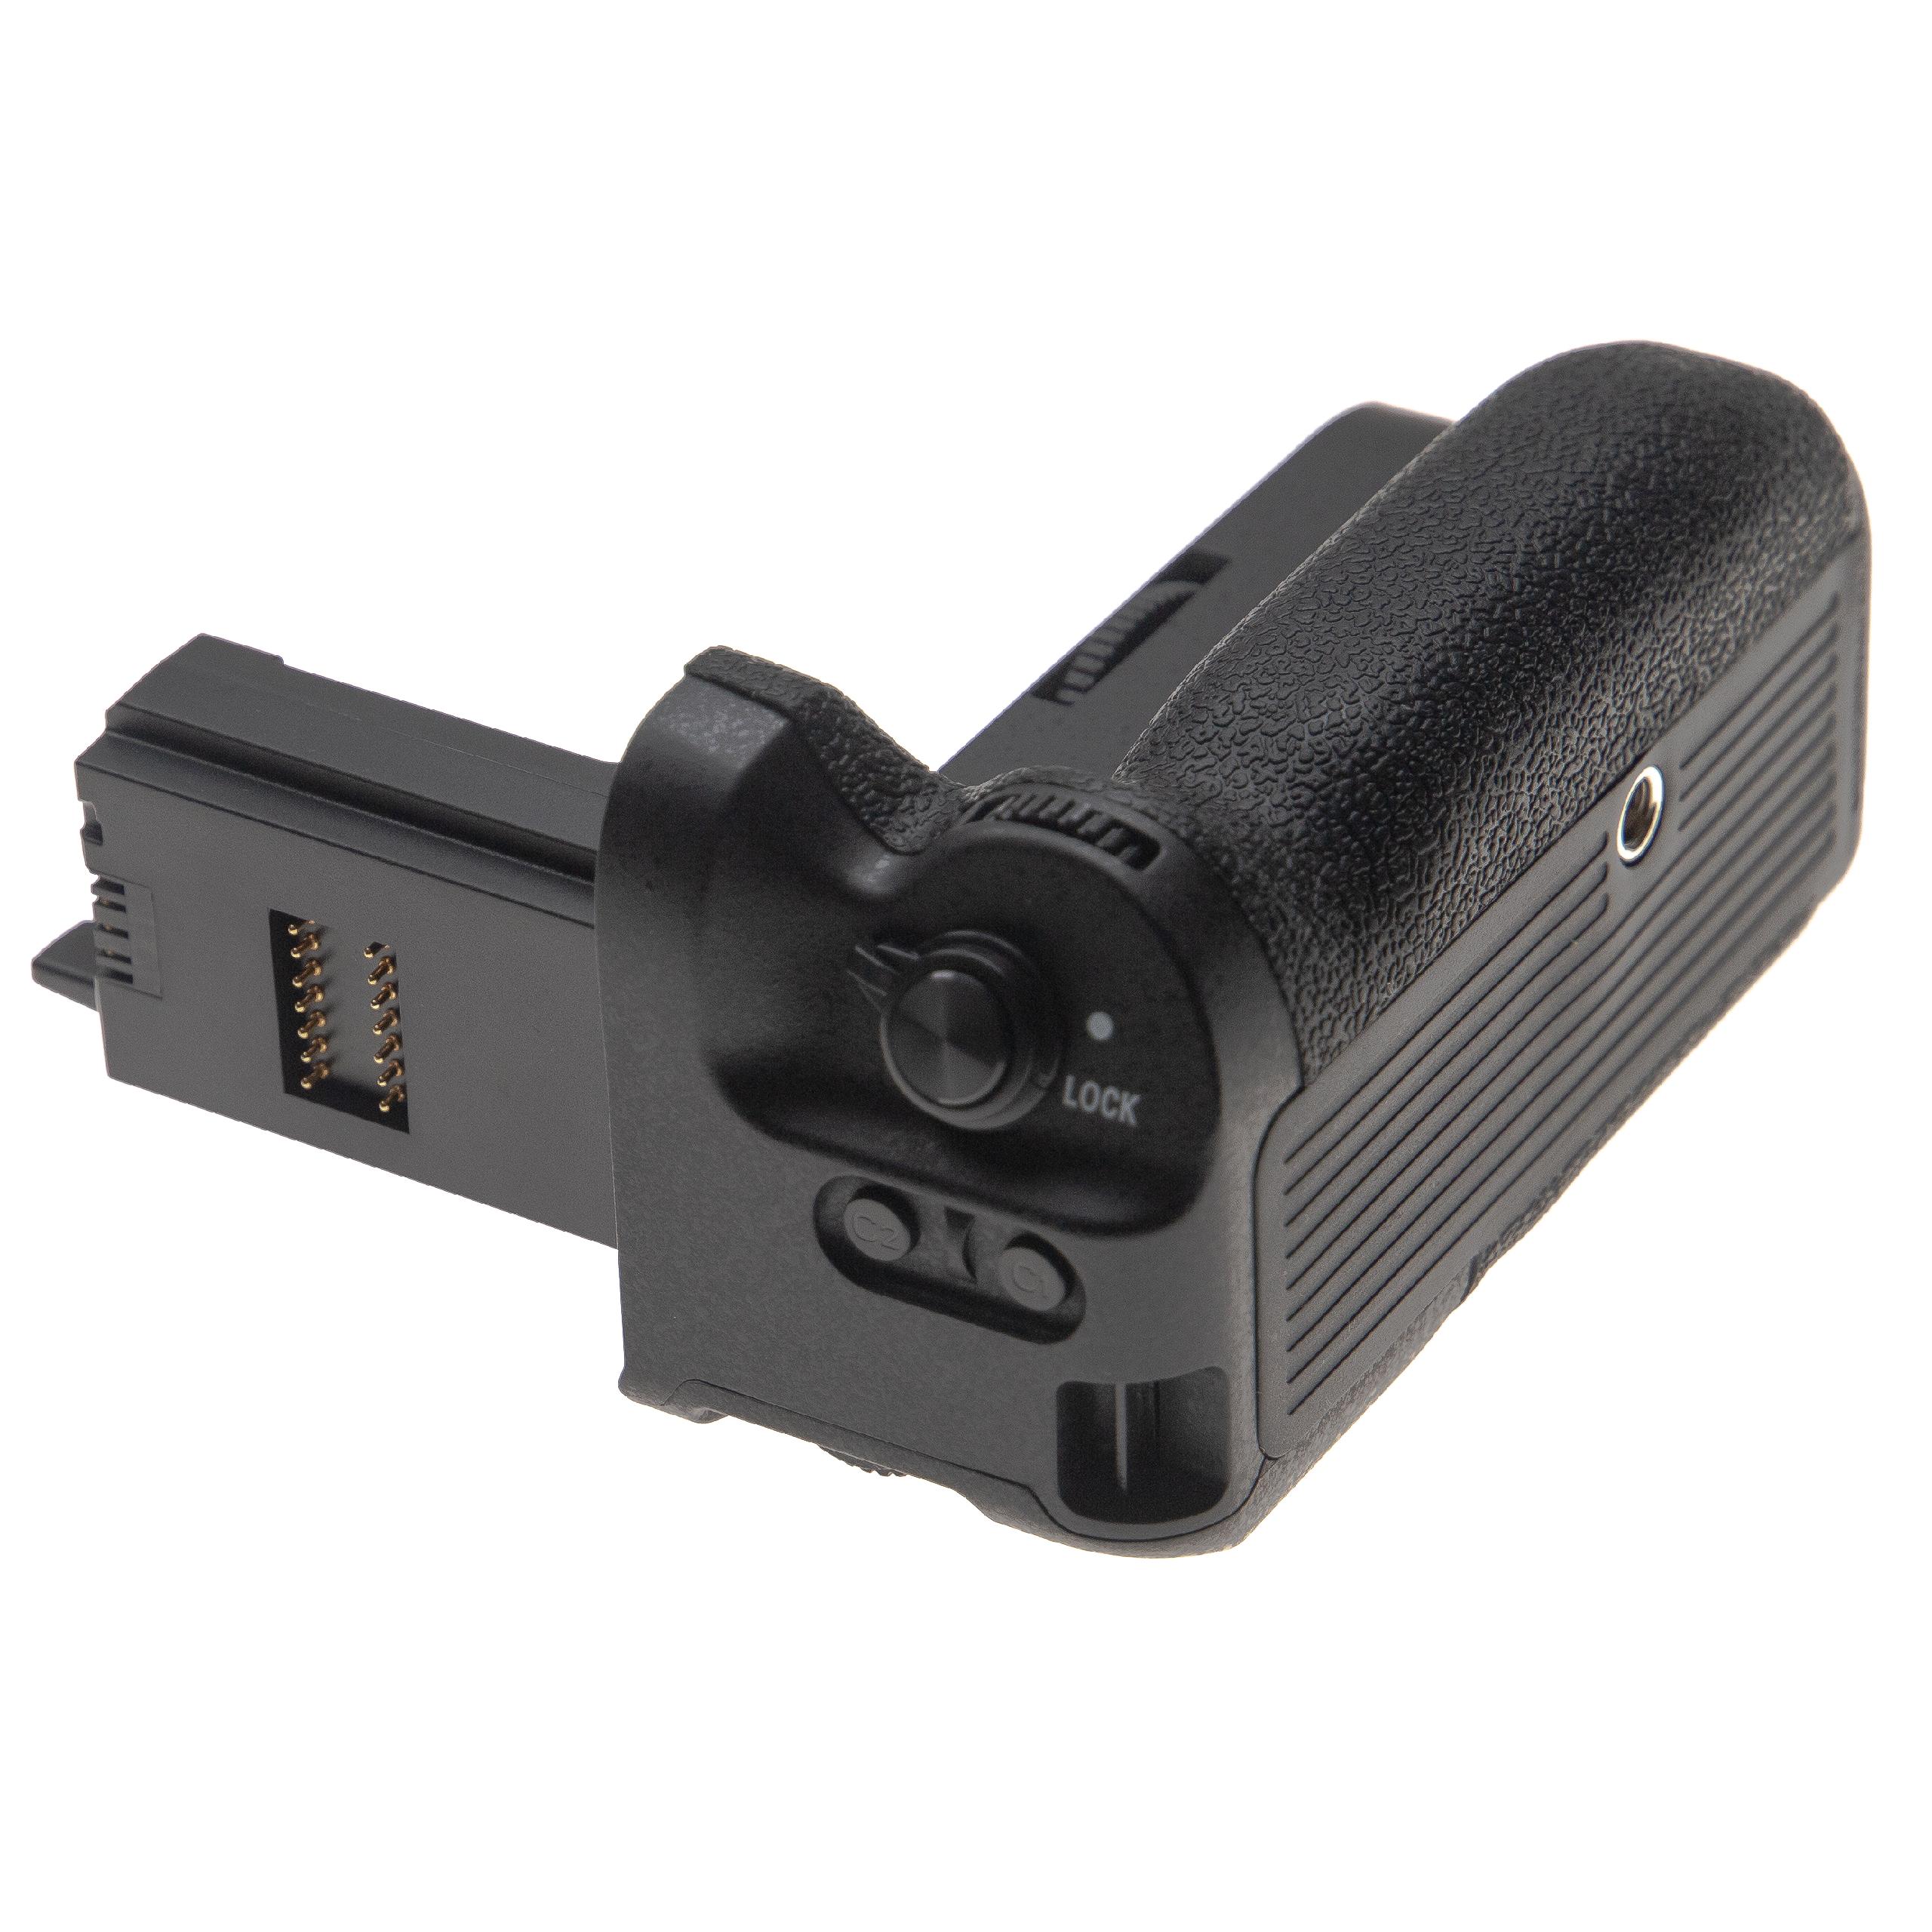 Batteriegriff als Ersatz für Sony VG-C4EM für Sony KameraInkl. Auslöser 